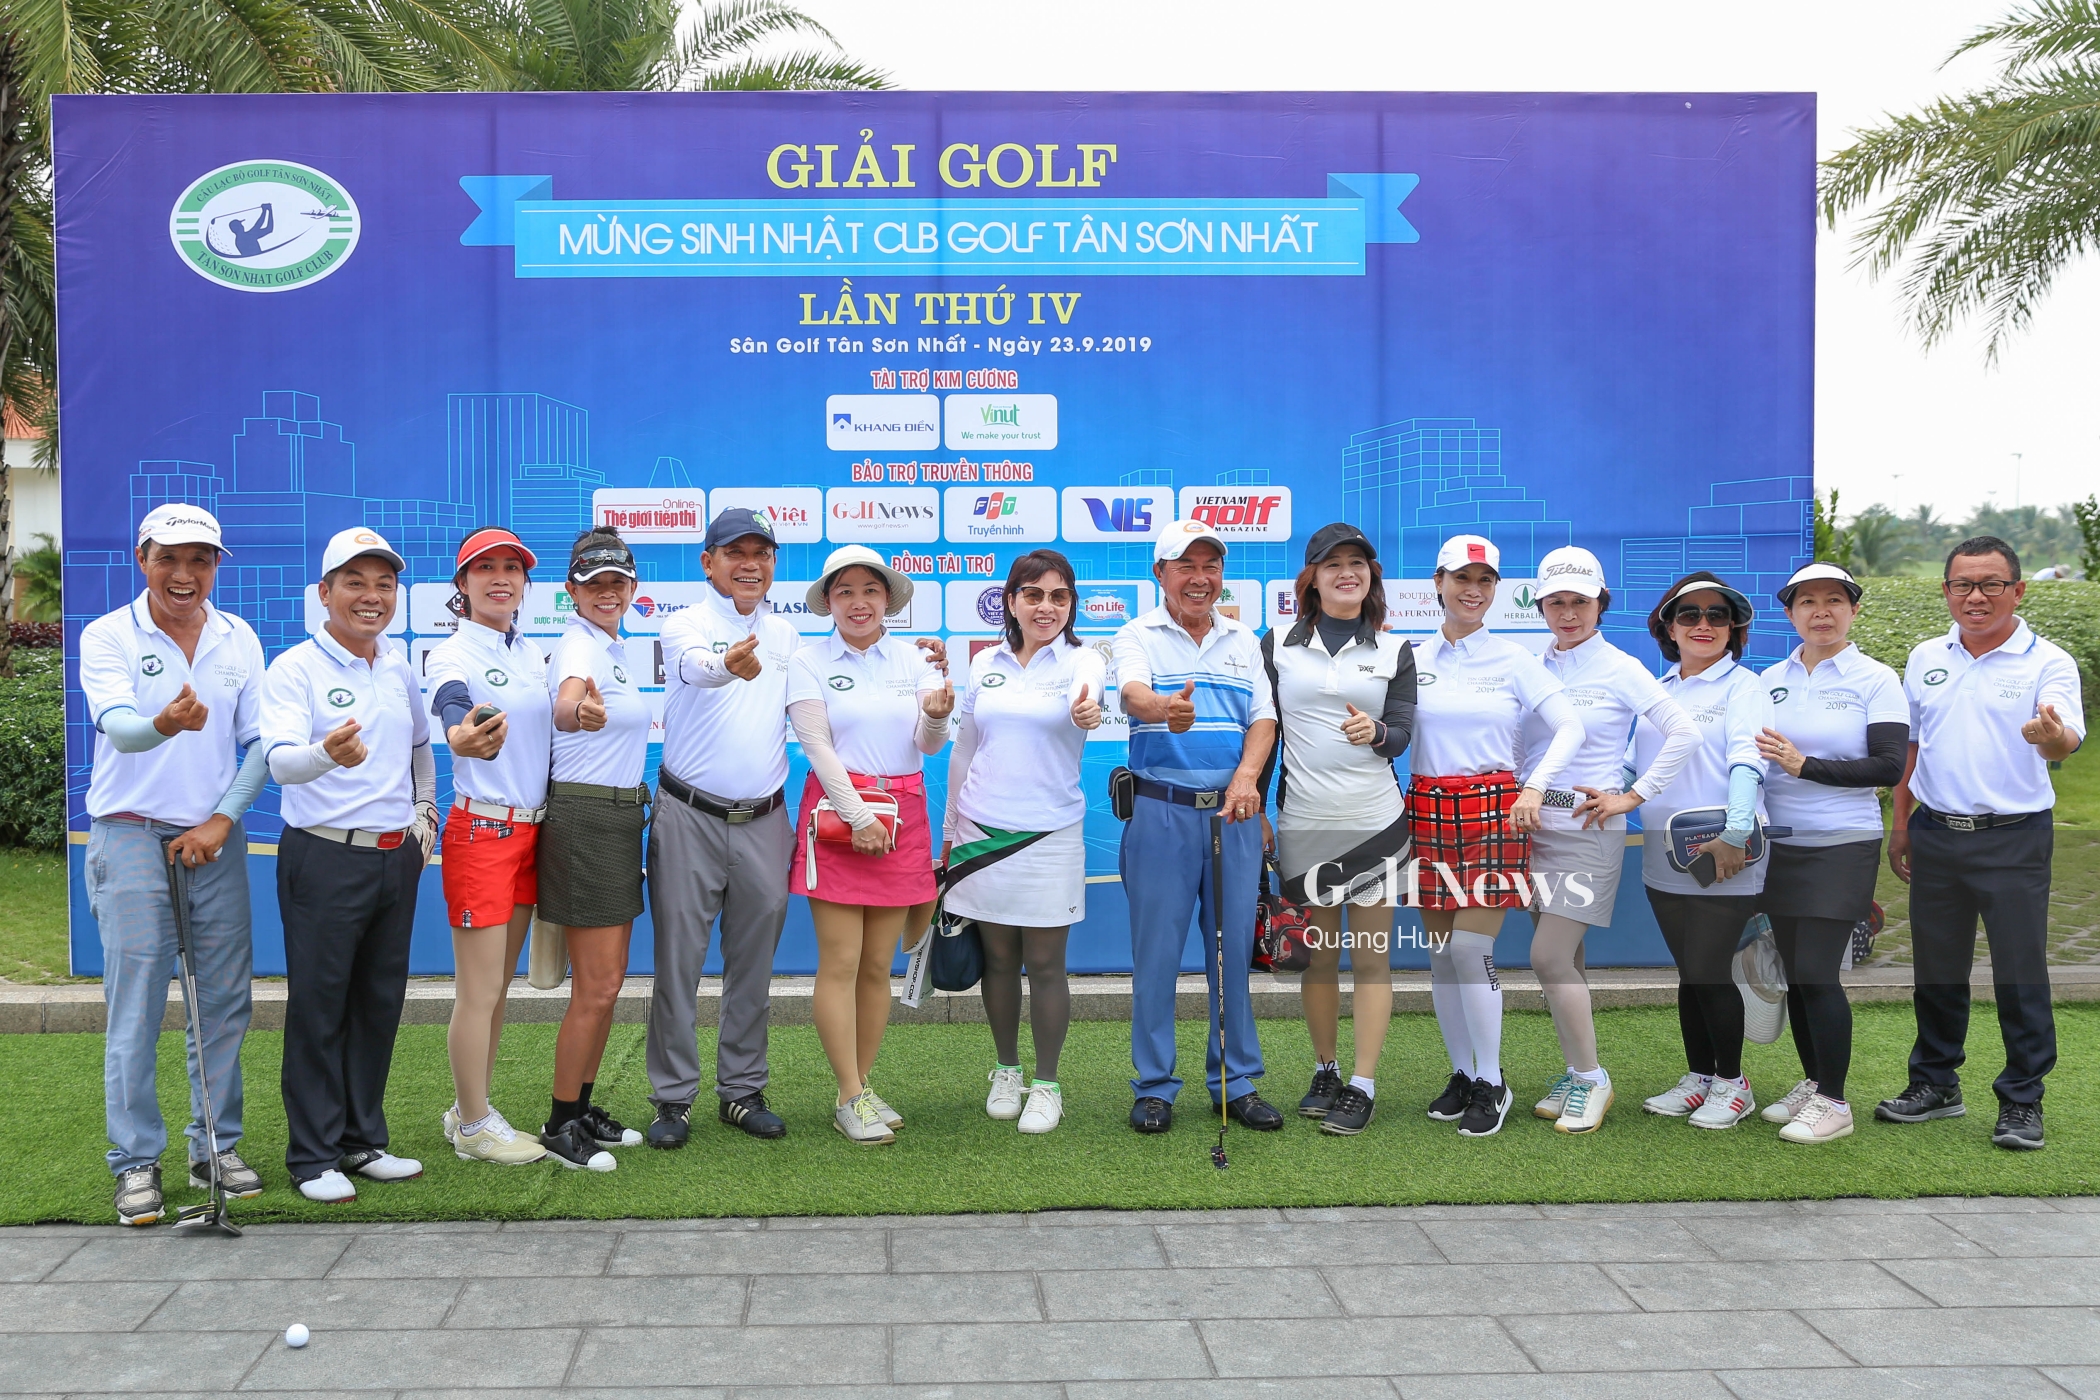 CLB Golf Tân Sơn Nhất: Đánh dấu hành trình hoạt động 4 năm